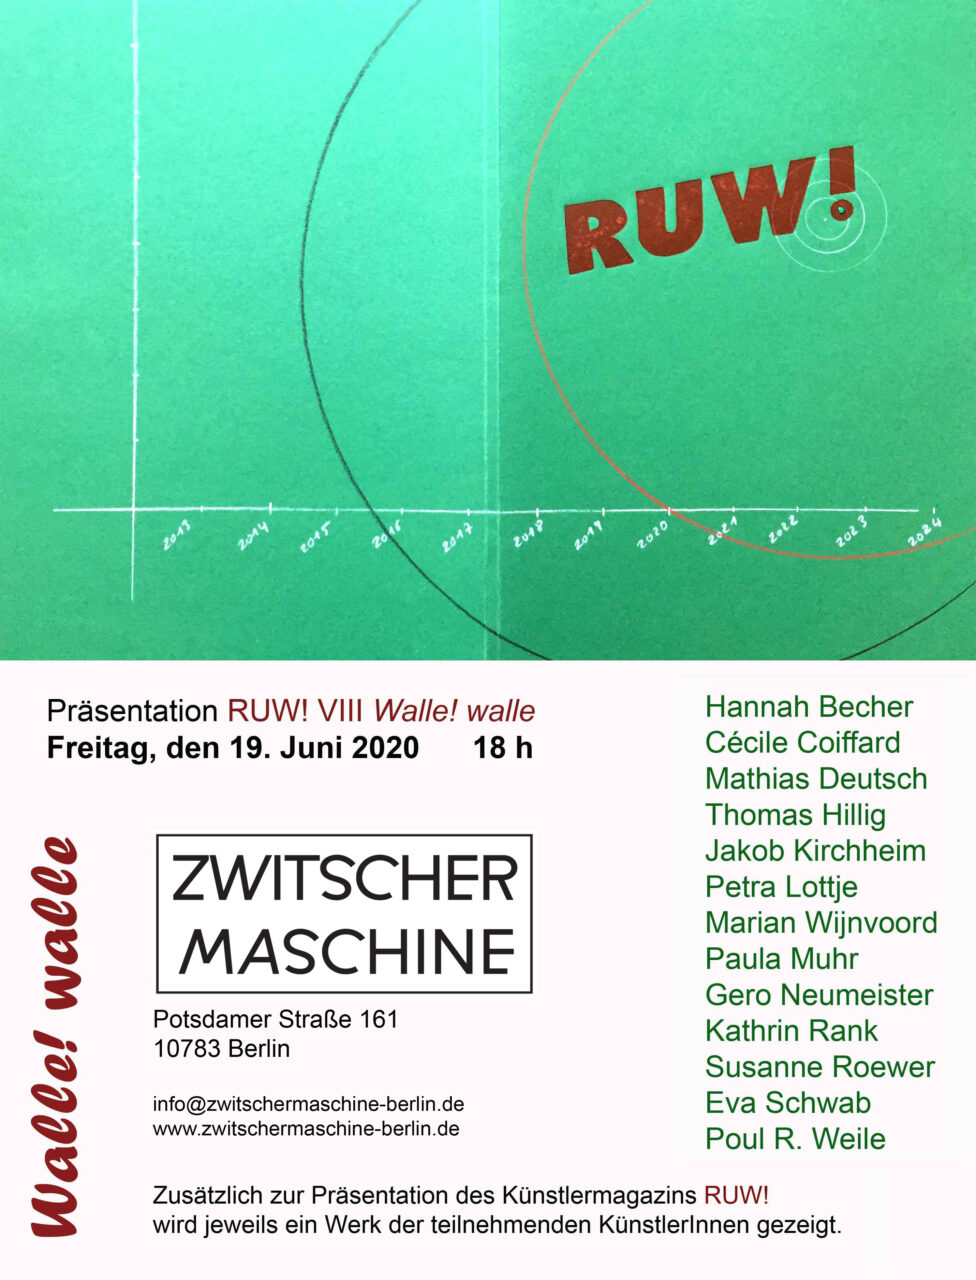 R U W ! Issue 8 "Walle!walle" Das Künstlermagazin aus Berlin